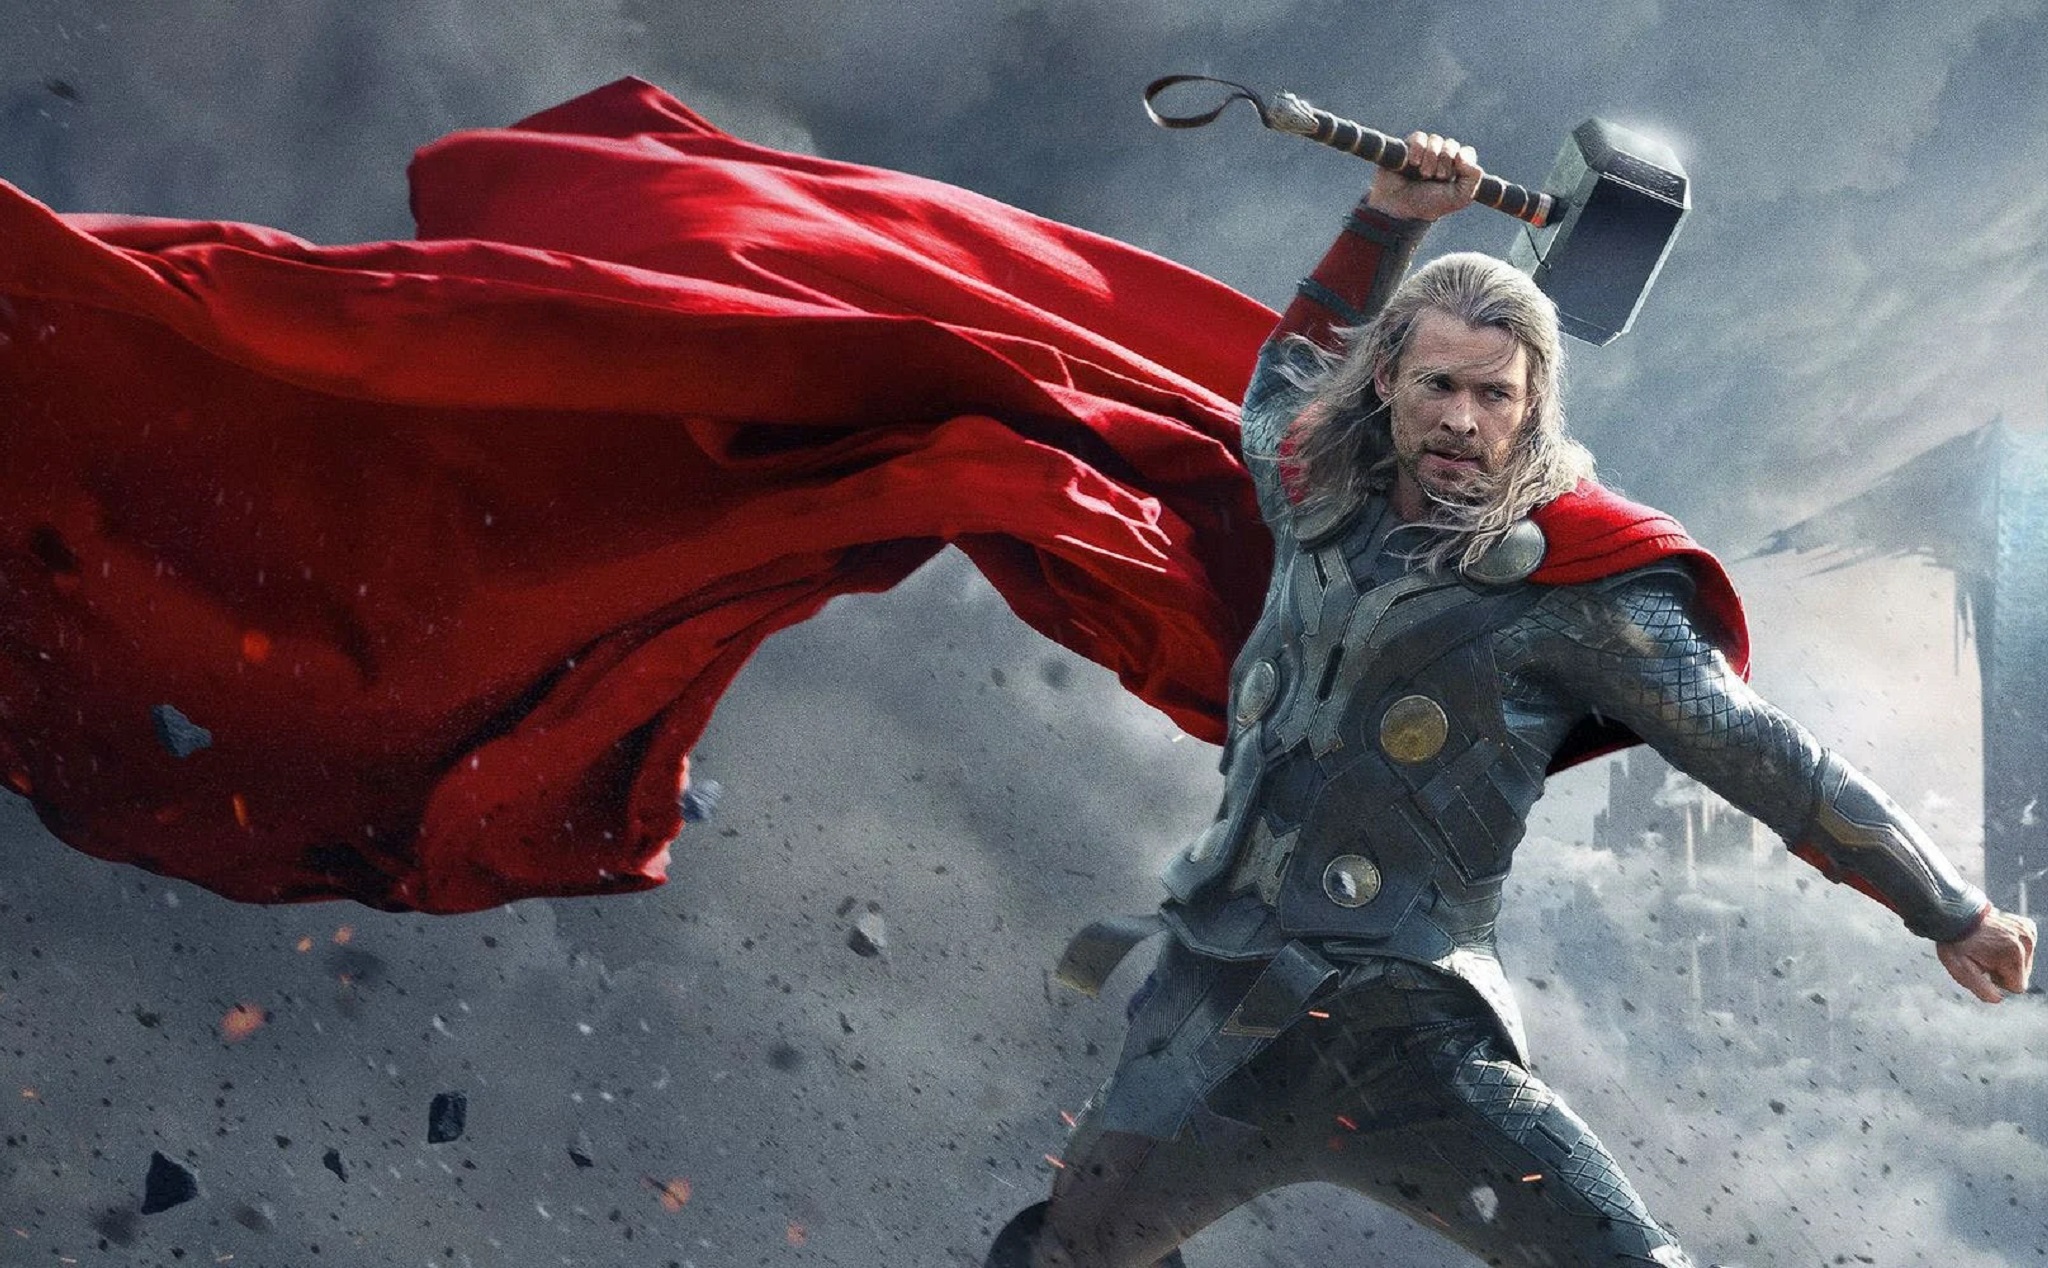 Chồng bạn có tình yêu với siêu anh hùng Thor? Nếu vậy, bạn không thể bỏ qua hình ảnh này! Nhìn ngắm và cảm nhận một chút đường Cong của búa của Thor, cùng với bộ cánh hầm hố. Sẽ không có ai giống như Thor trên trái đất này đâu!